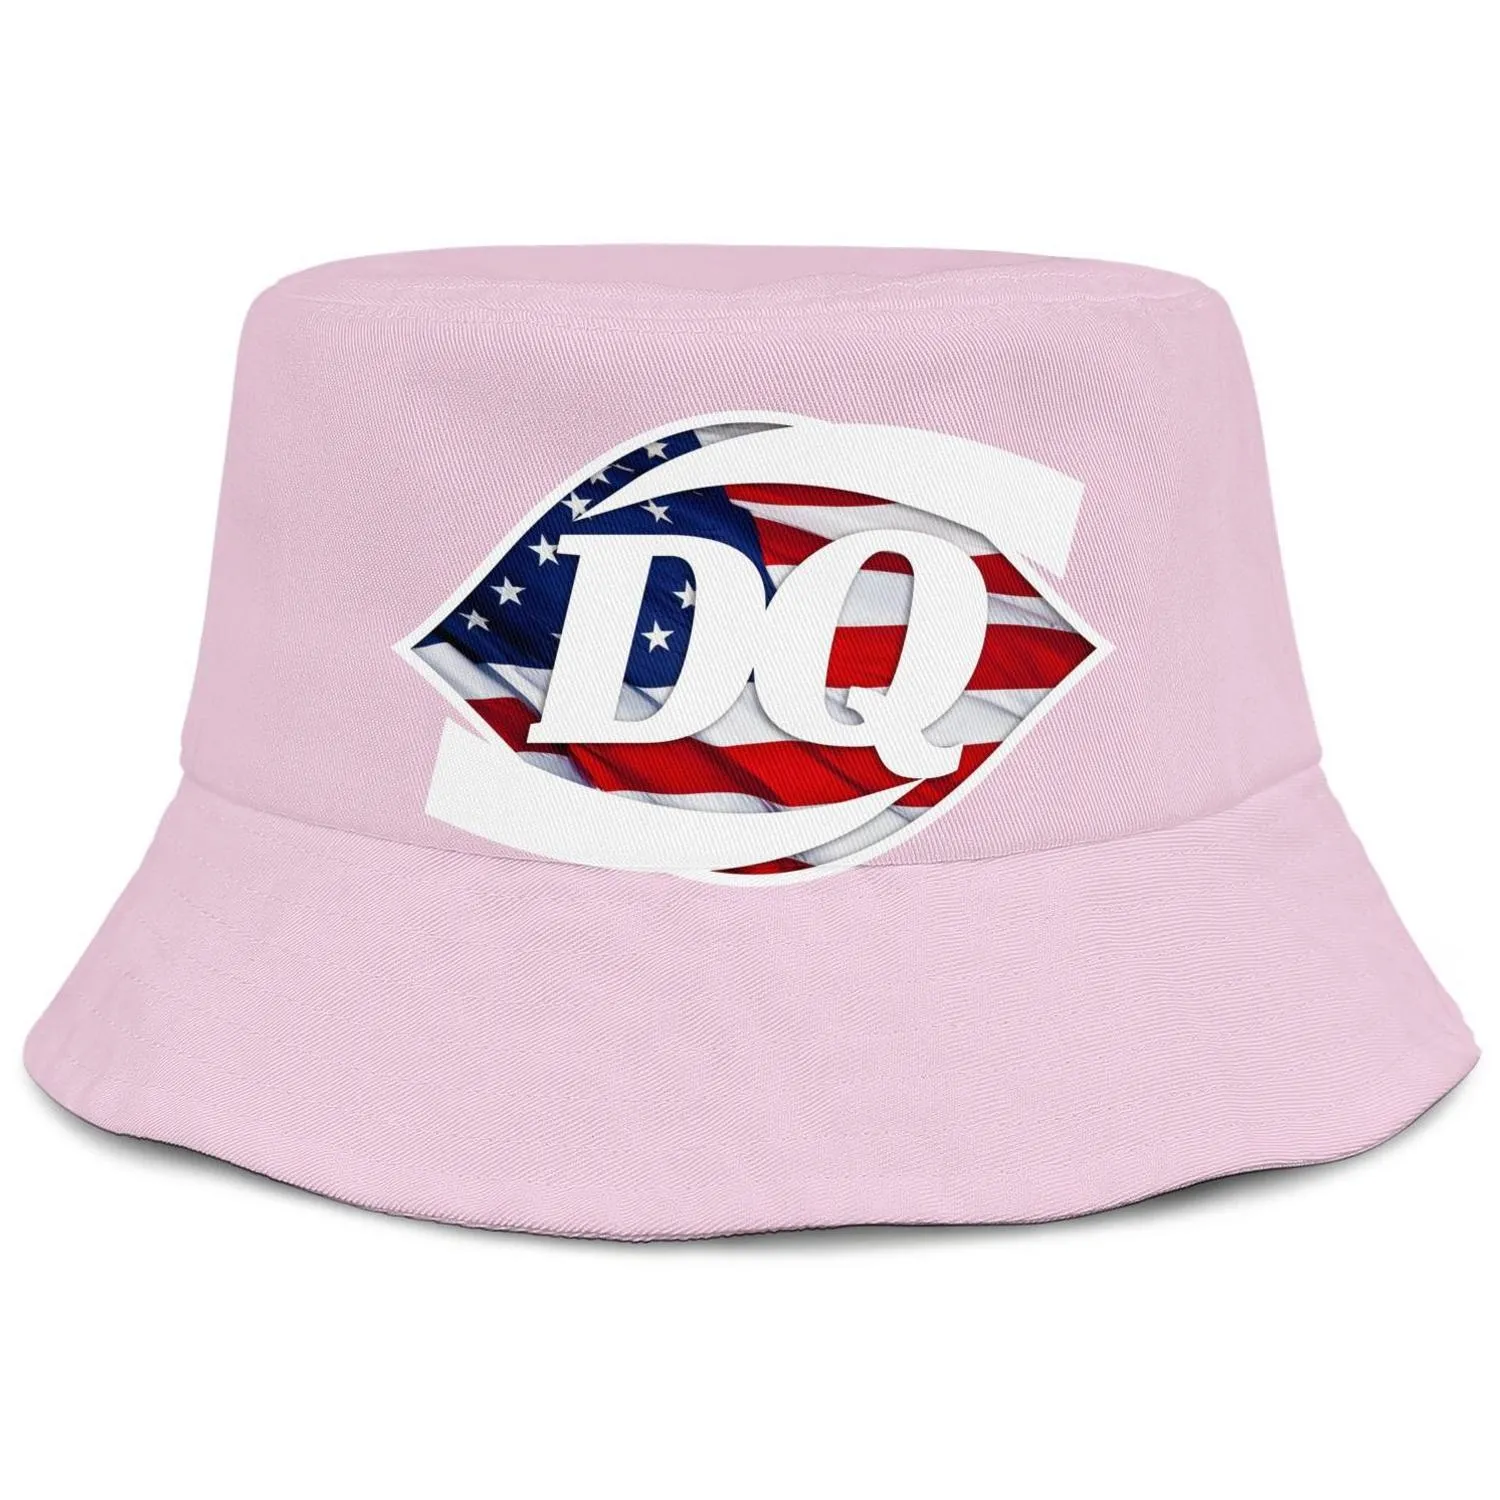 Crème glacée Dairy Queen DQ pour hommes et femmes buckethat cool mode seau casquette de baseball Marbre blanc Vintage vieux drapeau américain Plaid300D